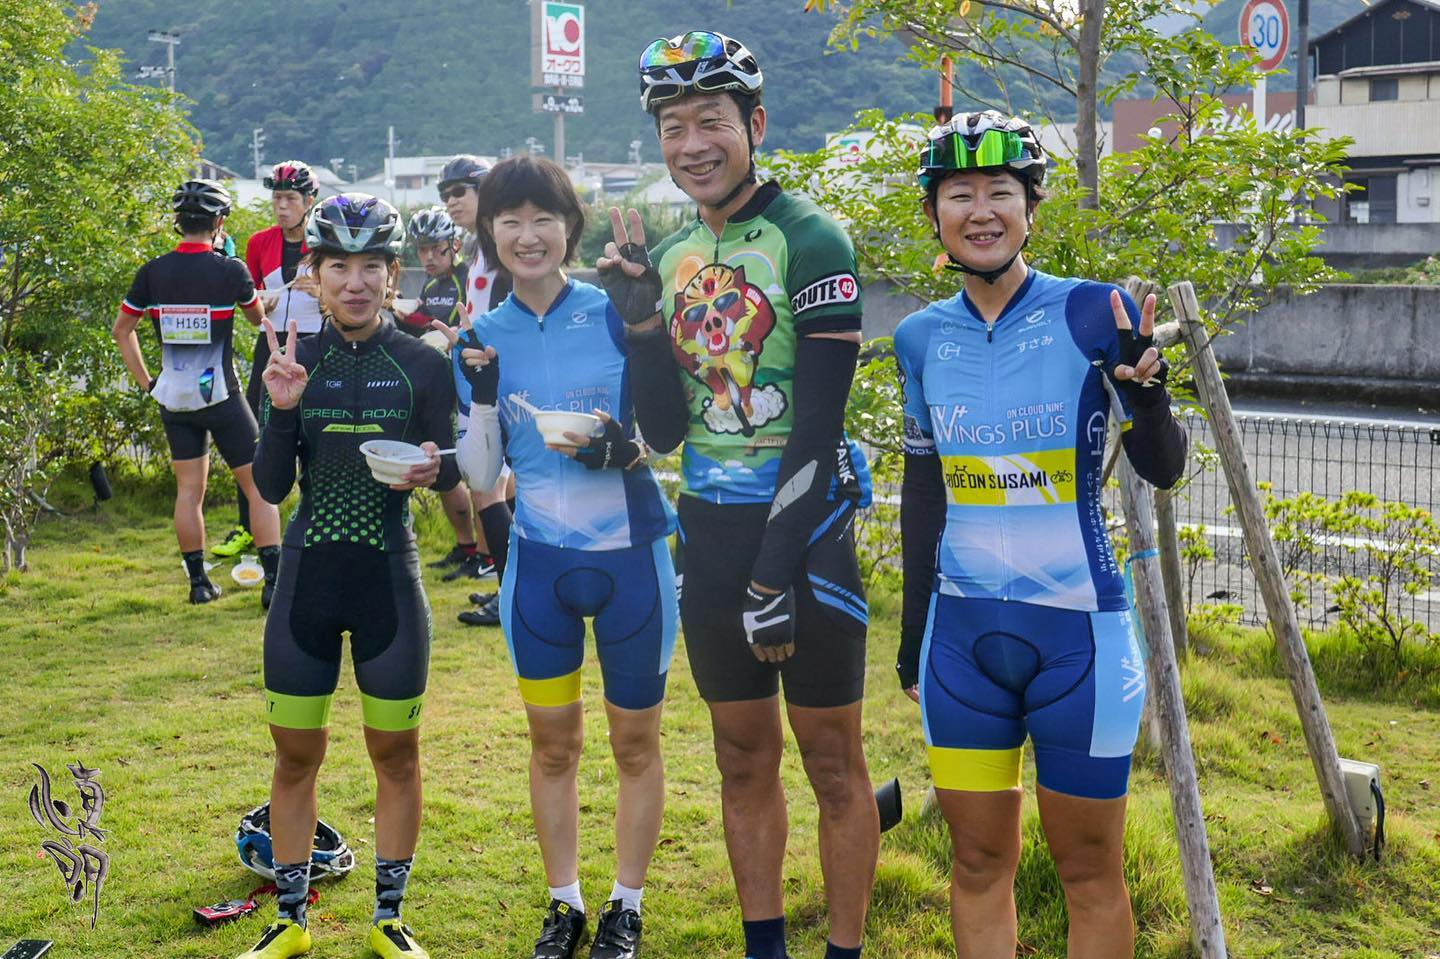 Instagram更新しました。 eg. 。こんにちは。和歌山のカメラマン・はれのひ工房の末藤です。いきなり鼻の下が伸びまくっているしゃしんですが、昨日は待ちに待ったライドオンすさみの自転車イベントでした。写真は左、今年の乗鞍ヒルクライム女子チャンピオンの佐野步選手です。右はいつも来てくれるロードレースの牧瀬翼翼選手です。牧瀬選手も過去乗鞍で優勝しています。真ん中は牧瀬選手の妹さんで、今回落車した方の救護にあたってくれて大変助かりました。ライドオンすさみは自転車で100kmと140kmのコース、主に海のすさみ町と日置川町、山と川の古座川を走るイベントライドです。始まって以来大人気のイベントでコロナで2年ぶりの開催でした。とにかくエイドの食べ物が美味しくて、140km走っても絶対にカロリーオーバーです！🤣海山川の景色が良いし、おじいちゃんおばちゃん子どもたちが沿道で応援してくれているし、和歌山の良いところギュッと詰まったライドでした。今回僕はサイクルリーダーというサポートスタッフとして参加しましたが、下りのコーナーでスリップした方を一人救護スタッフに引き継いだだけで無事に任務終了出来ました。その時に牧瀬選手の妹さんが機転効かせて的確に動いて頂いて助かりました。見た感じ、皆さん笑顔で満足そうで良かったです。また来年も暖かい温かい大会になりますよーに！個人的には、ちょうどキイジョウロが咲いていたり、キノコや星が日本有数のキレイさだったり、熊野ジオパークの見どころなど、まだまだ魅力たくさんあるので知ってもらいたいです！あと…鮎の塩焼きが食べれなかった… – from Instagram